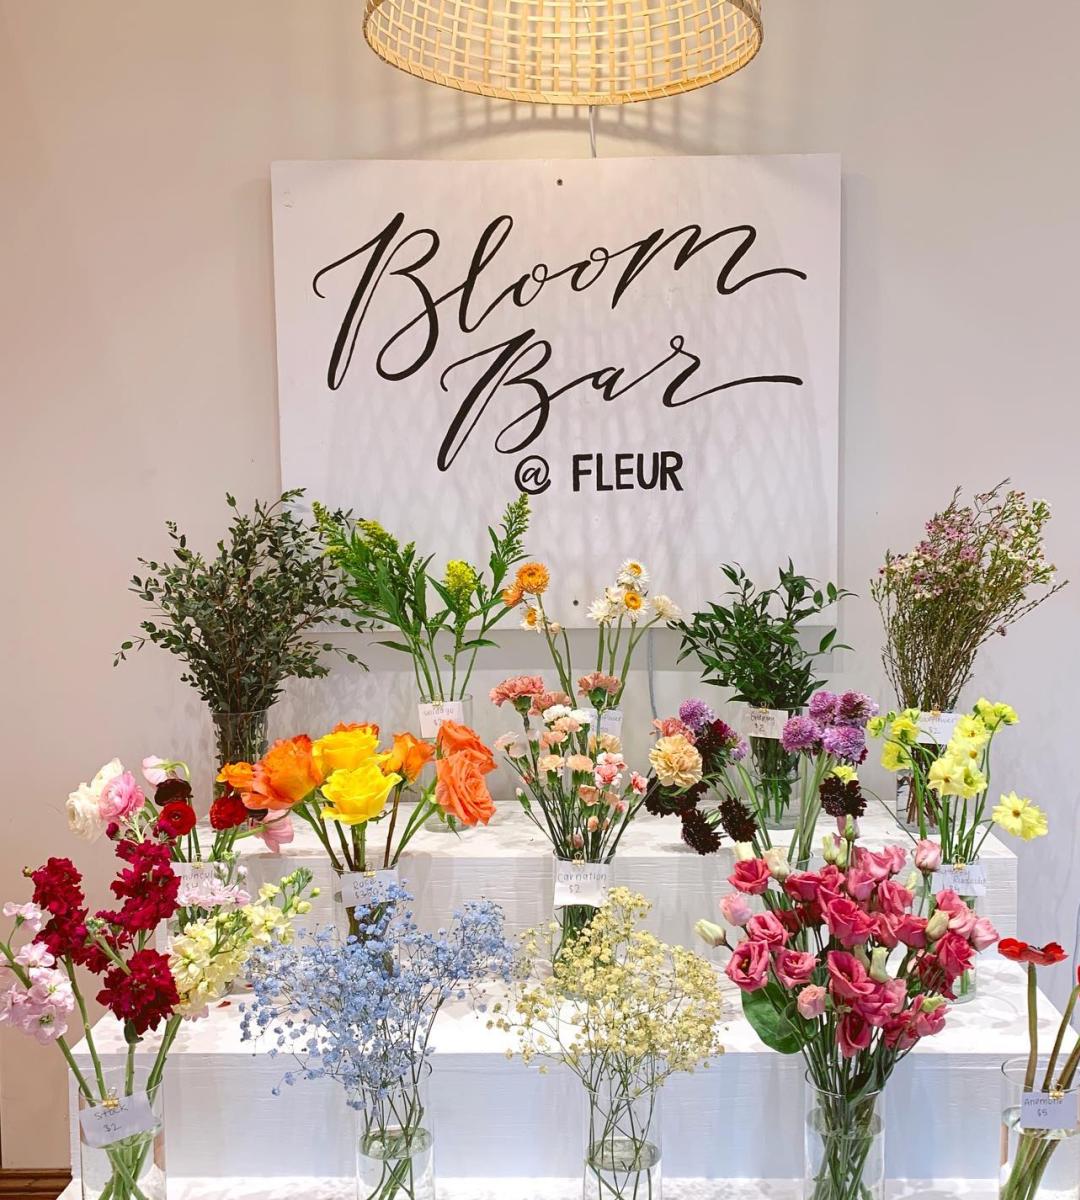 The Bloom Bar at Fleur Floral Studio